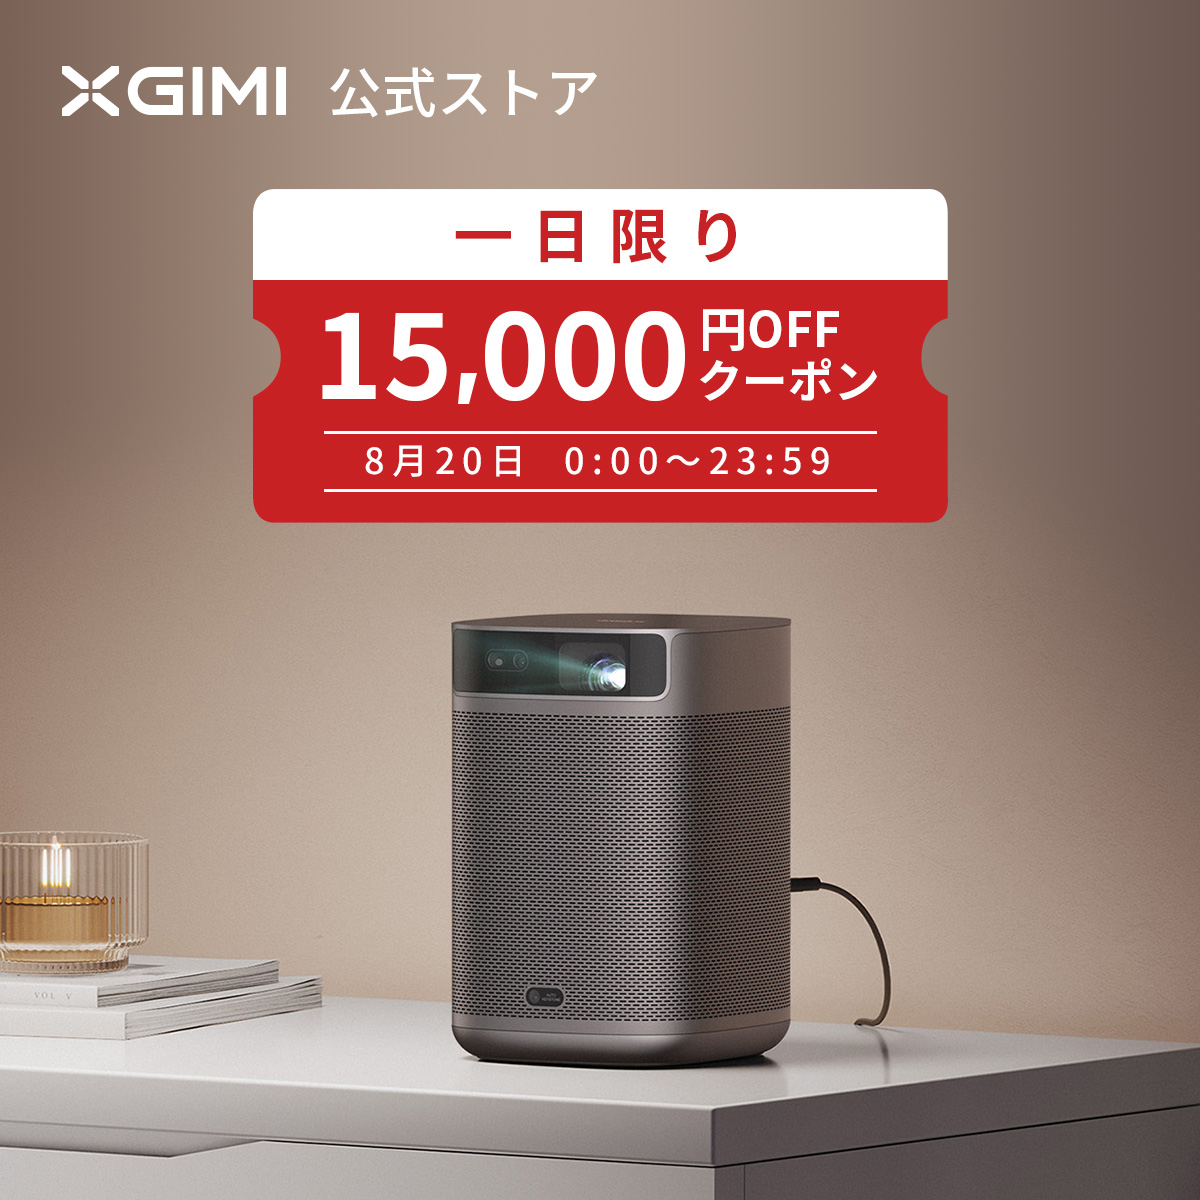 安売り XGIMI MoGo 2 Pro プロジェクター 小型プロジェクター 1080p